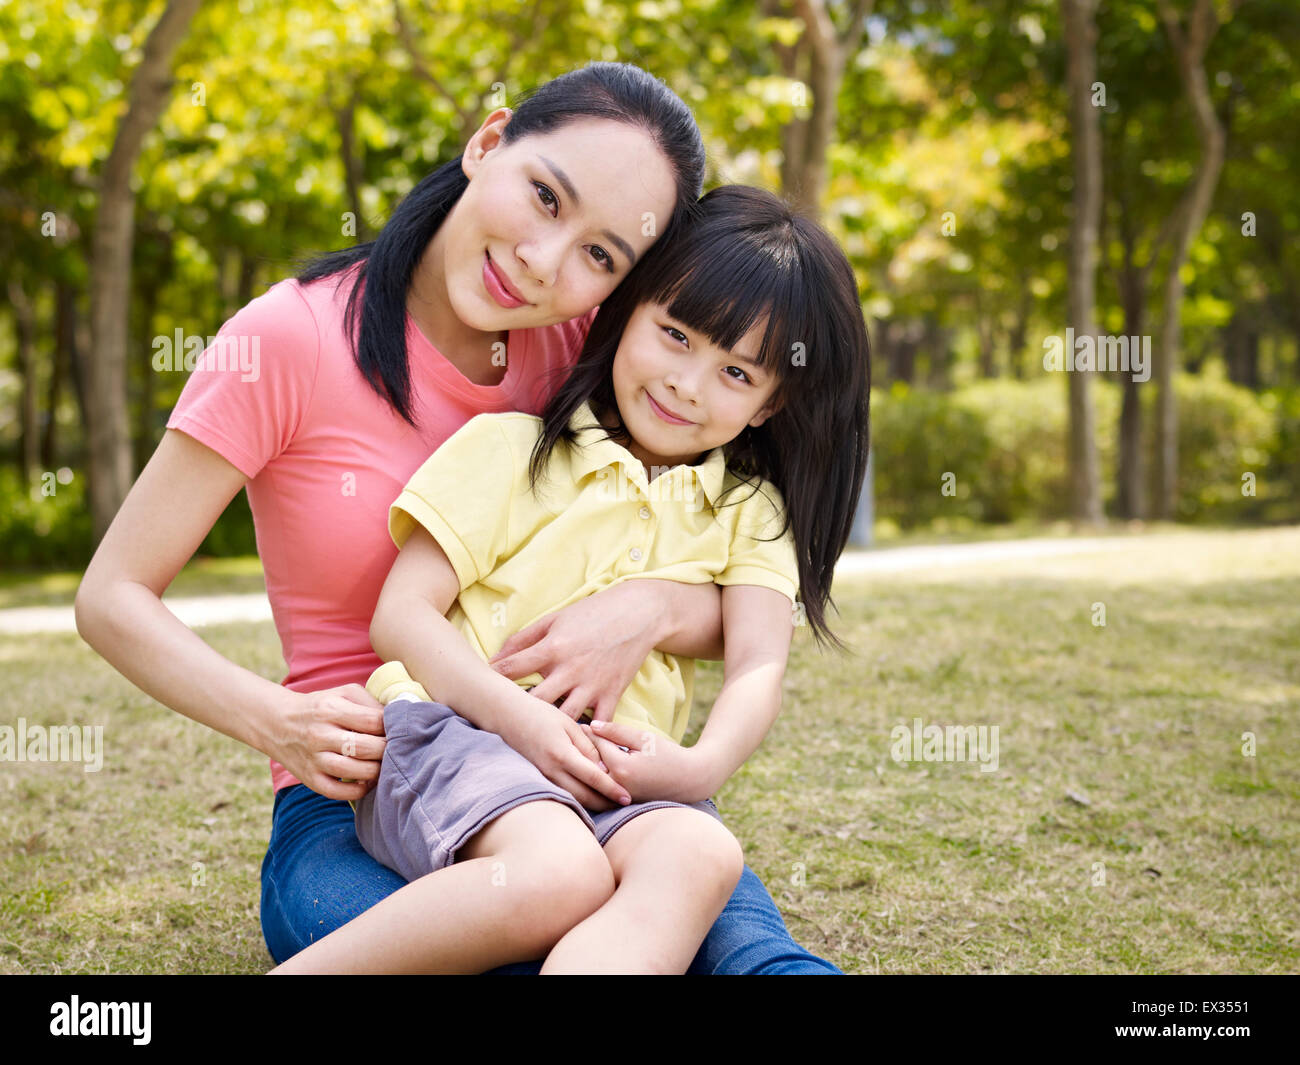 Mère et fille asiatique Banque D'Images